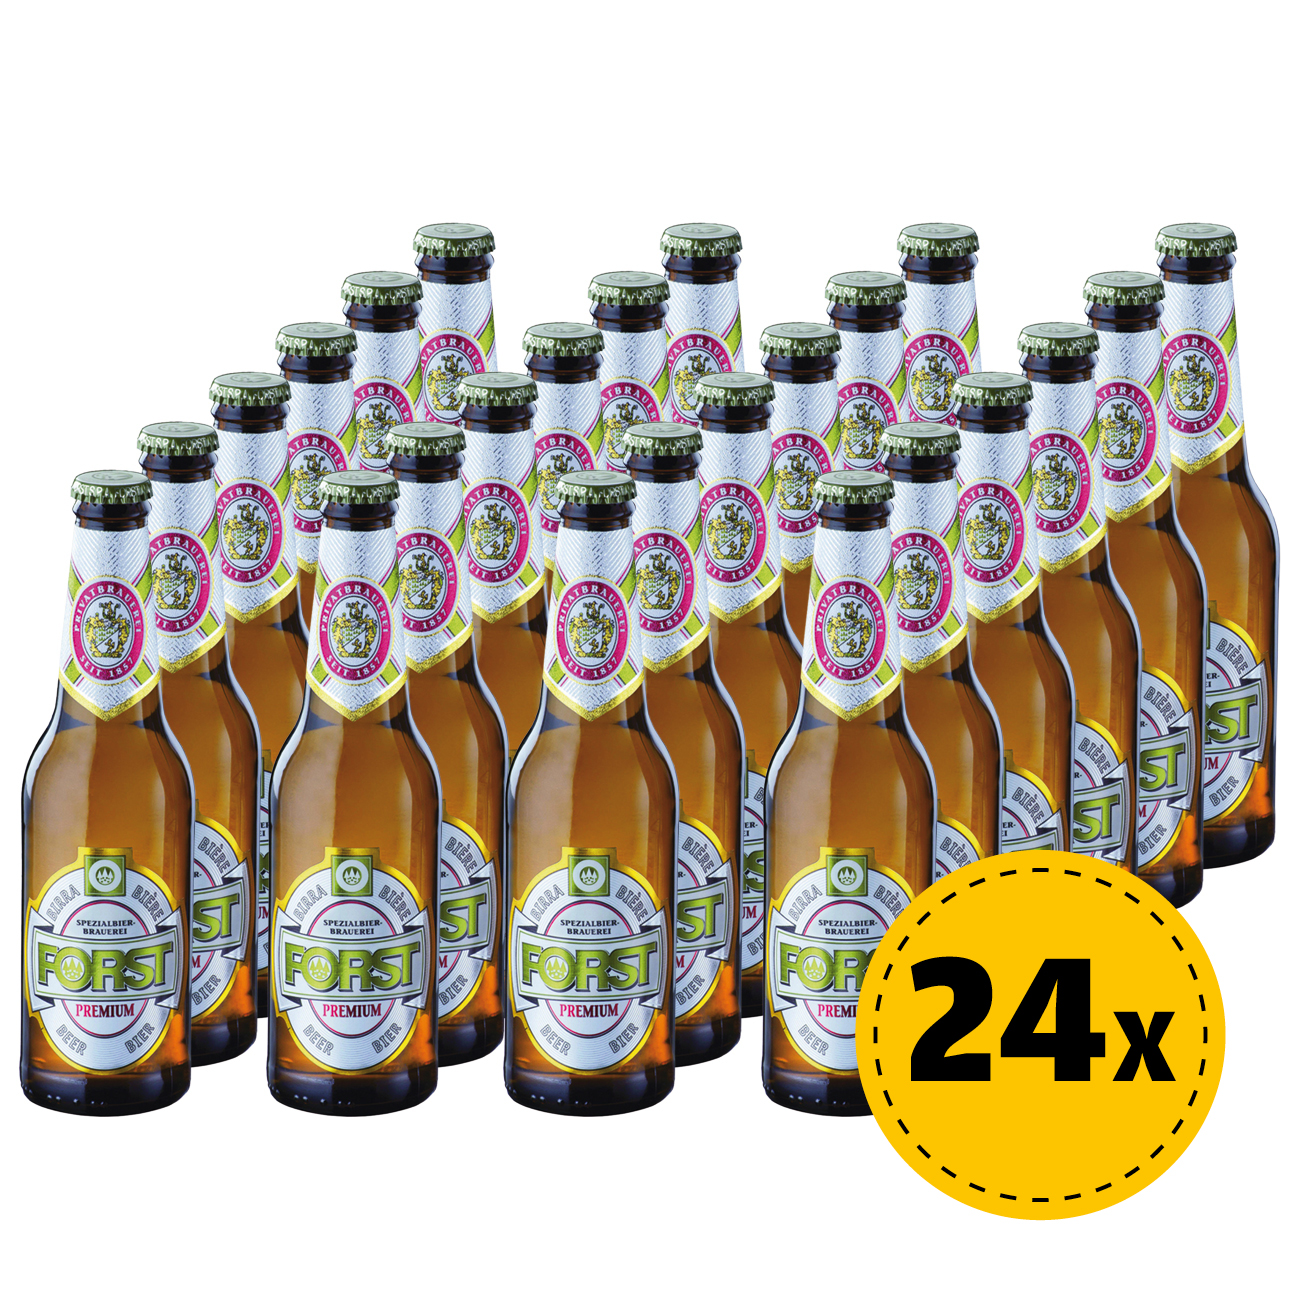 24x Forst Premium Bier